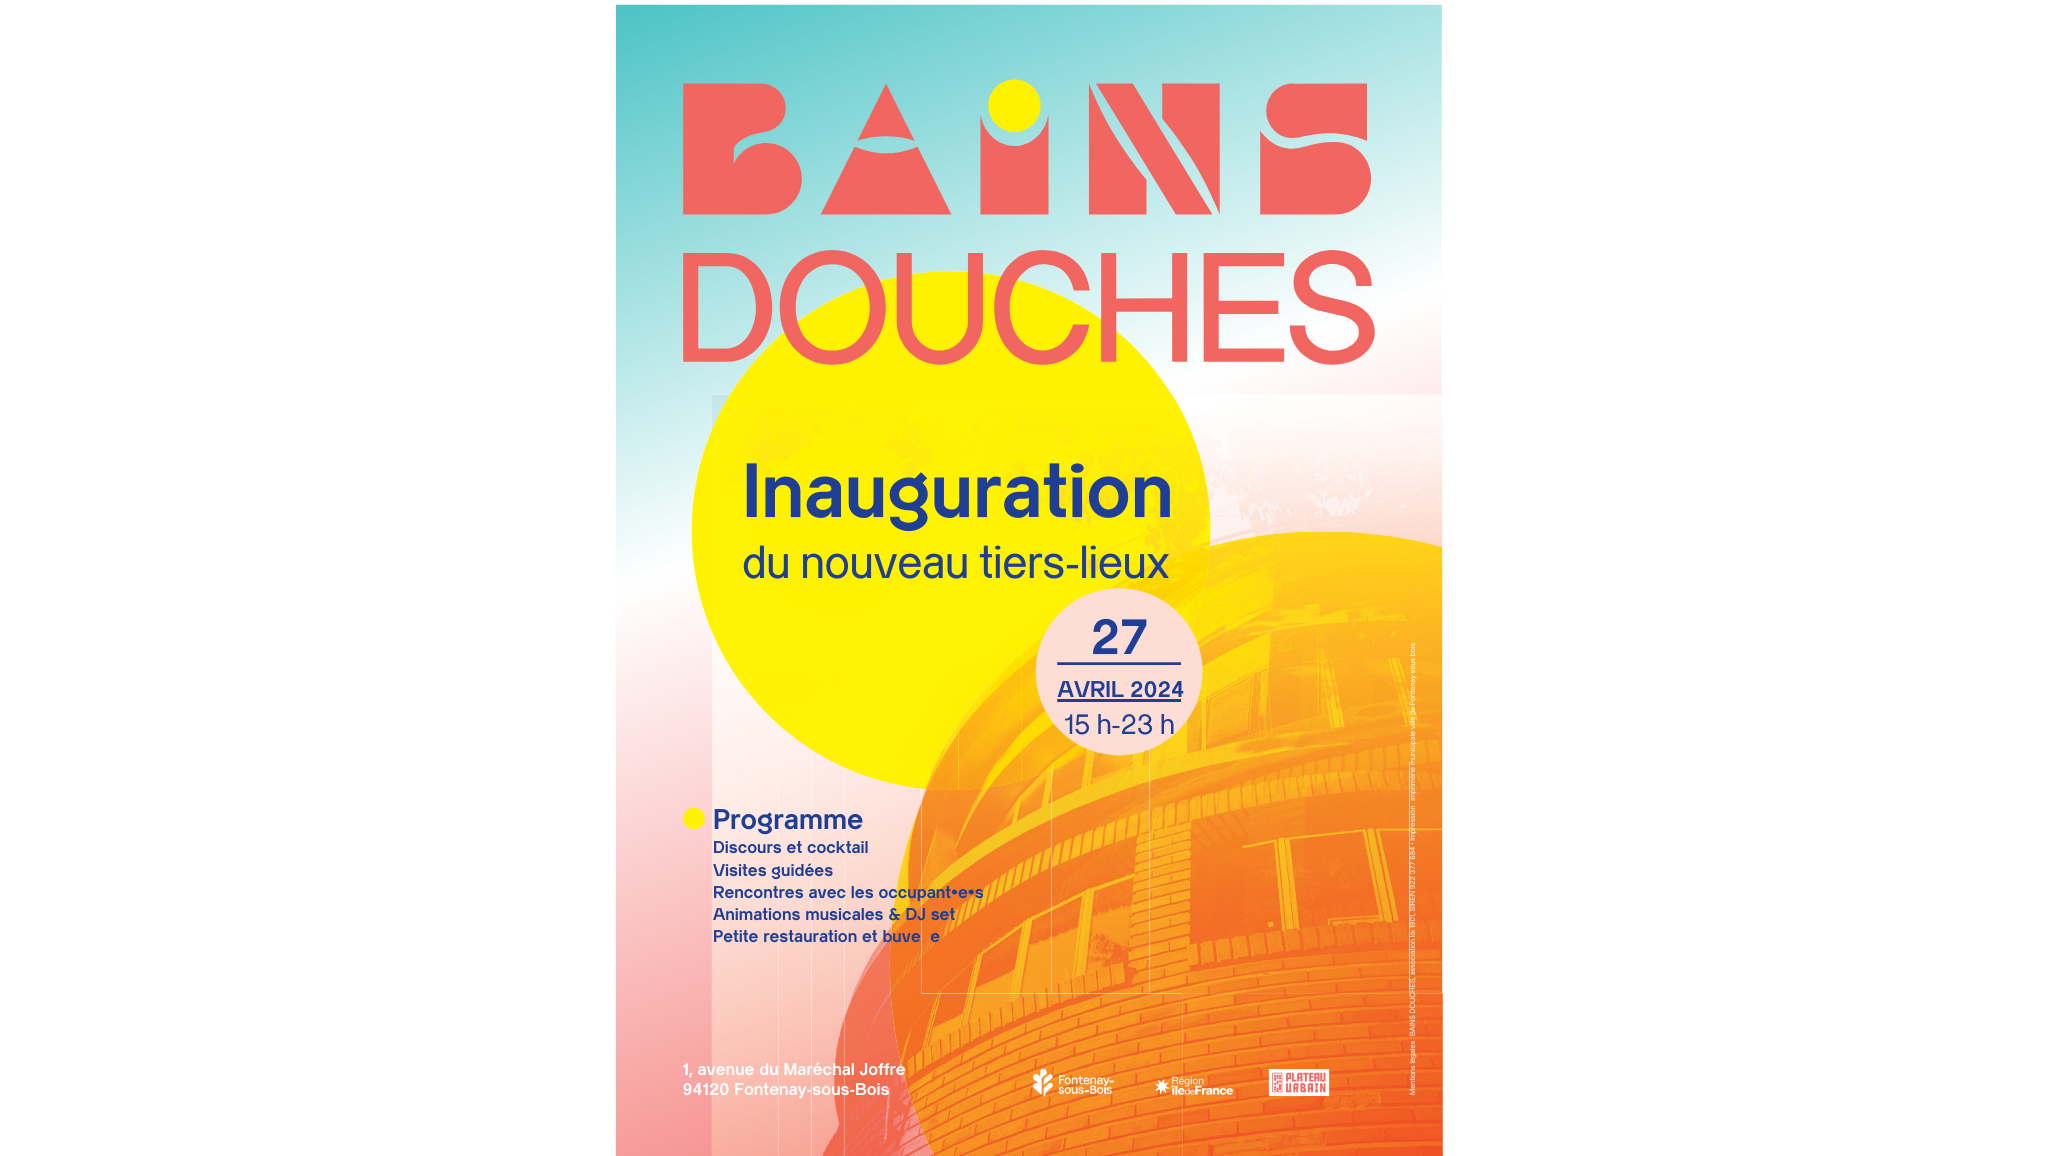 Affiche de l'inauguration des Bains Douches